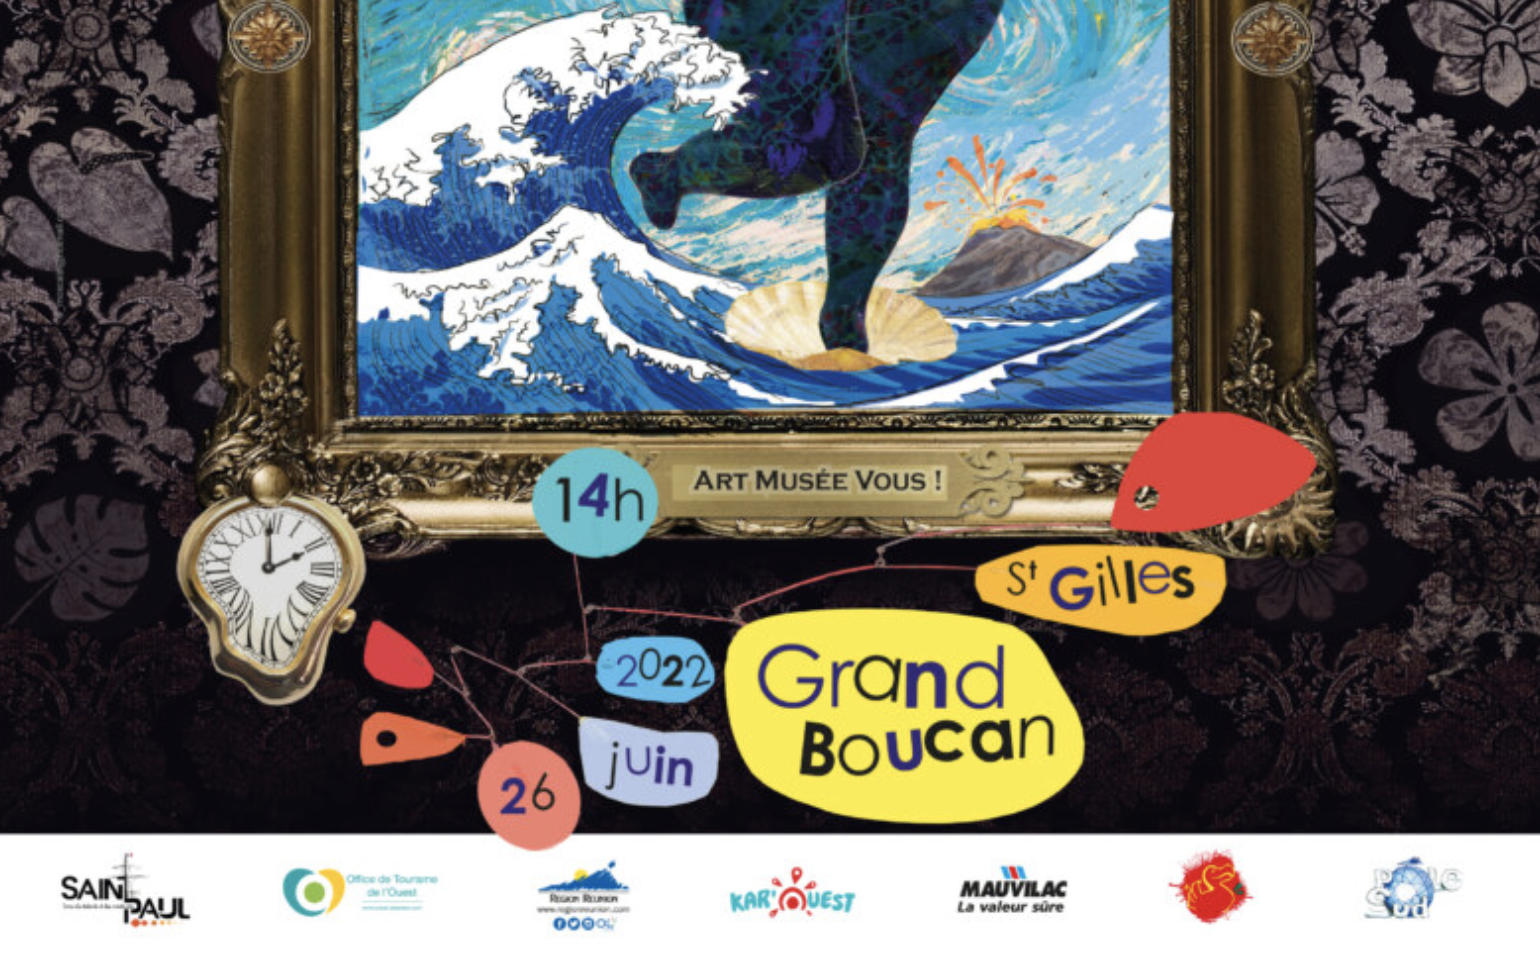 Le grand retour du Carnaval Grand Boucan 2022 : “Art Musée Vous !” à Saint-Paul